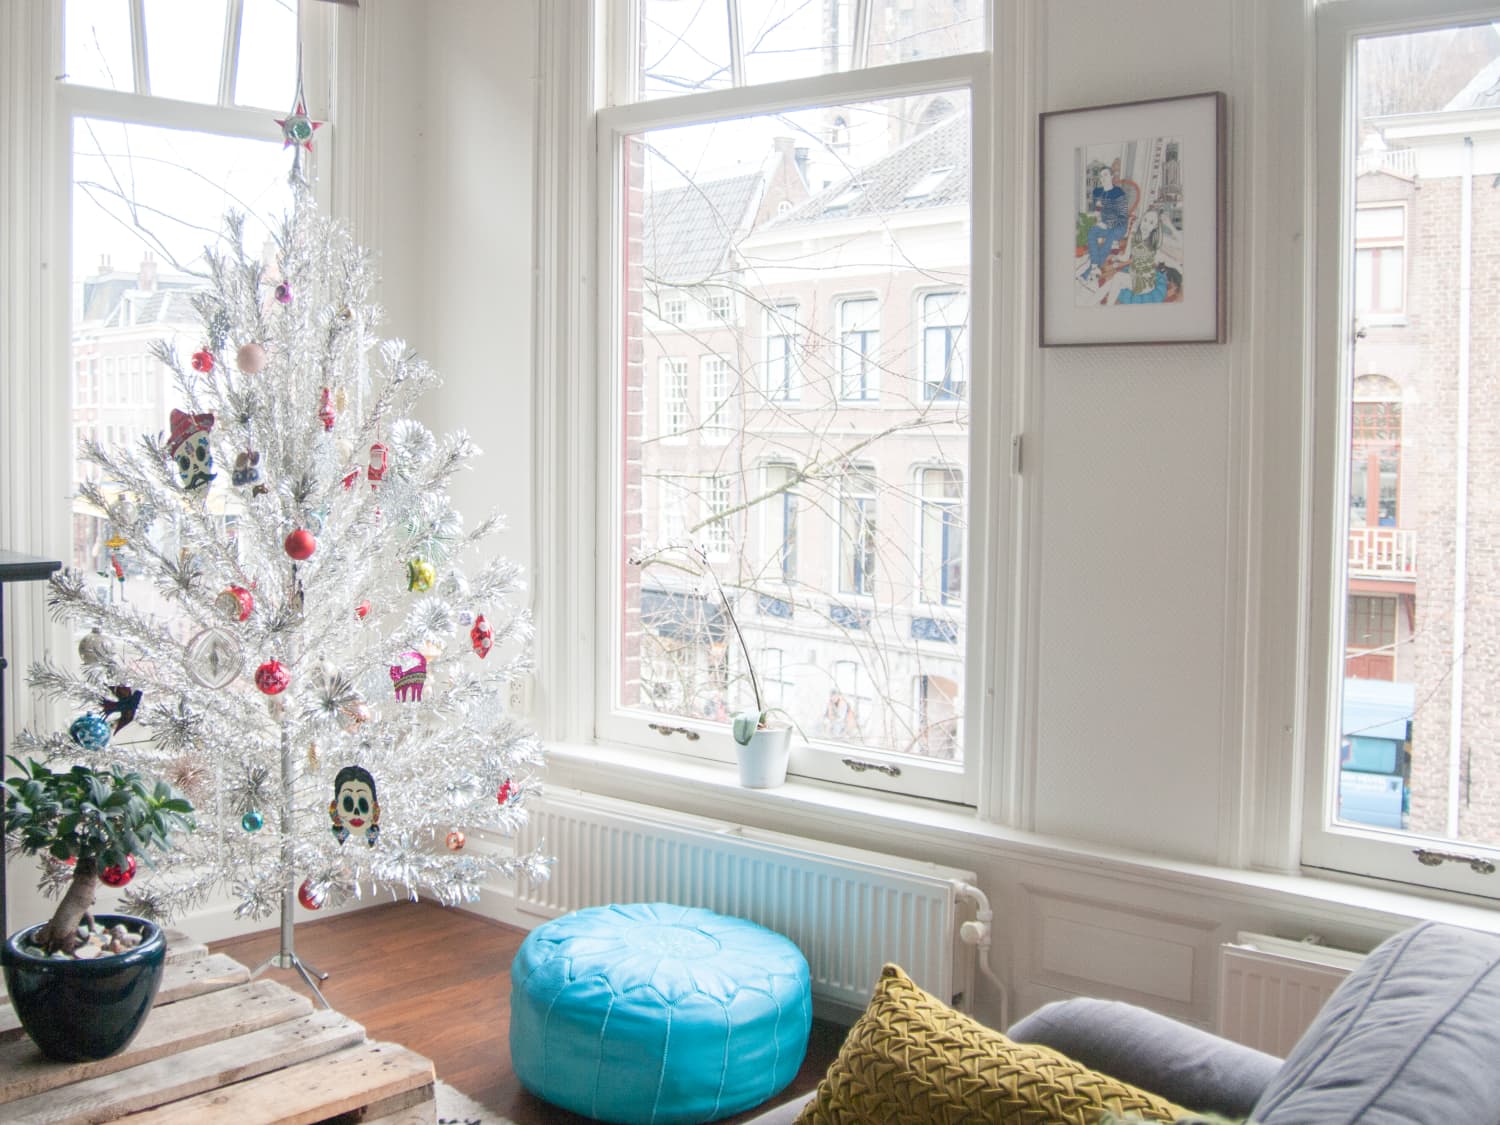 21 White Winter Wonderland Christmas Tree Decor Ideas That Trendy Now   White christmas trees, Elegant christmas trees, Winter wonderland christmas